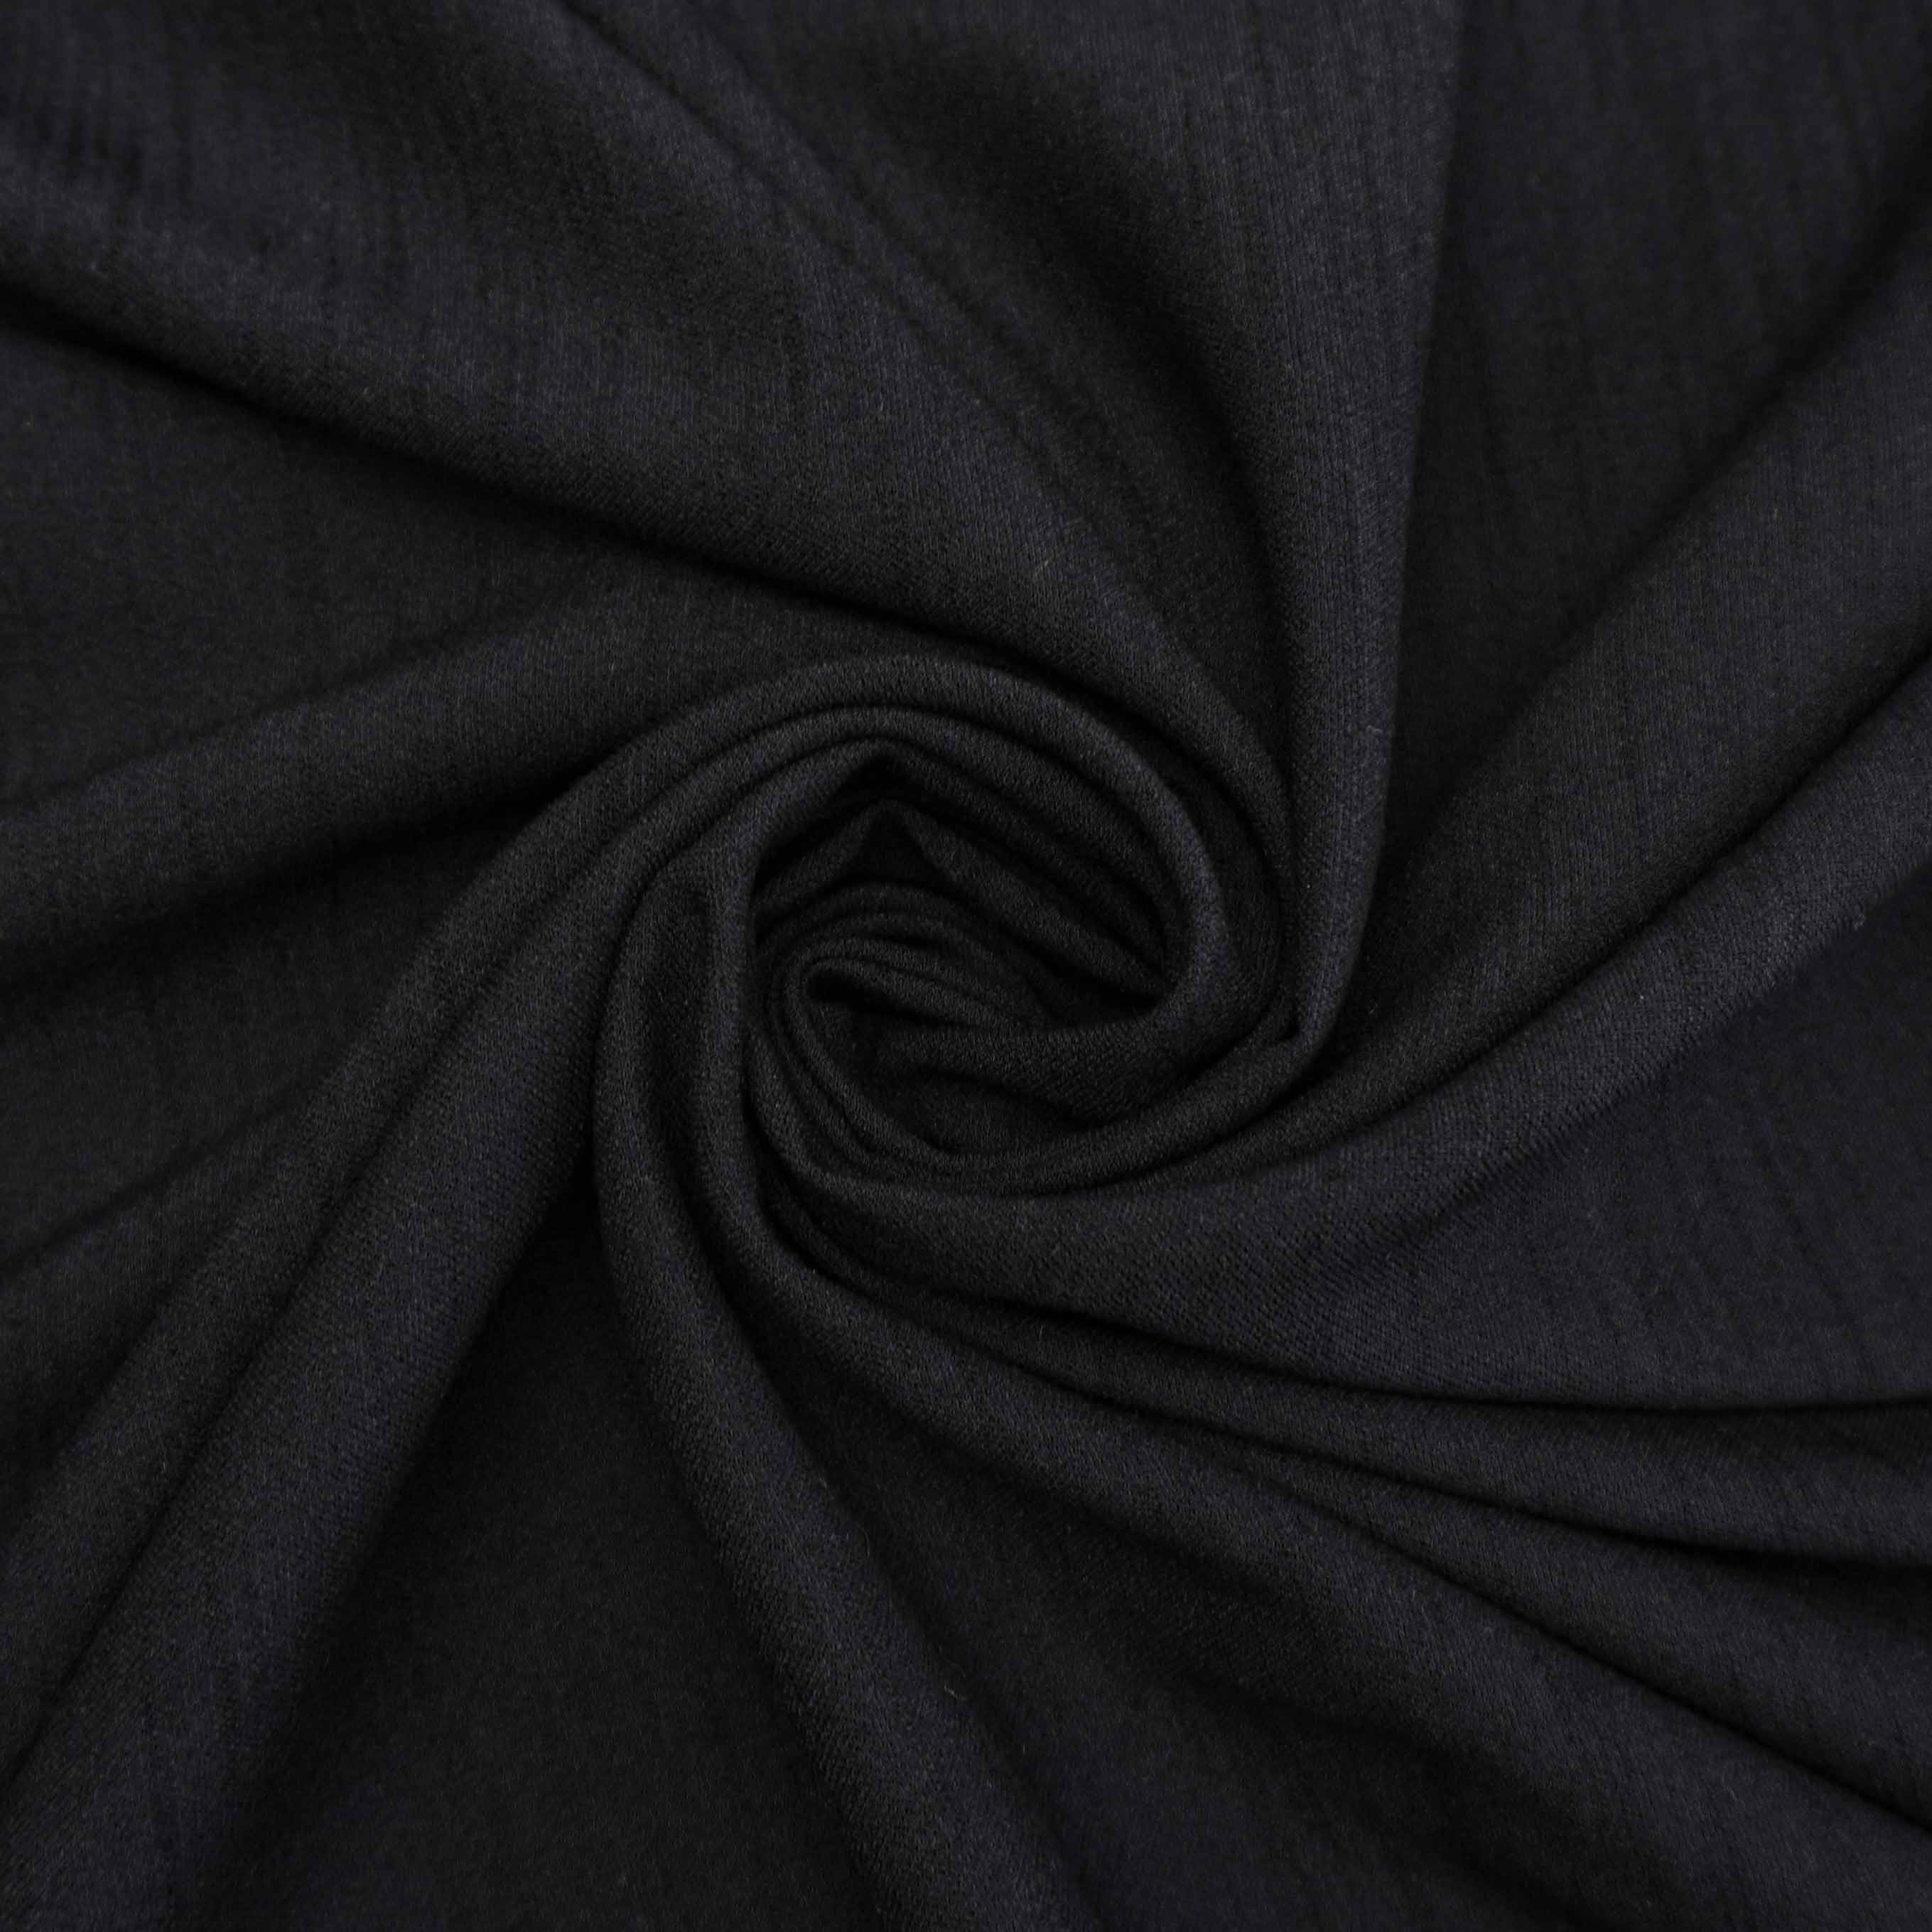 Tecido alfaiataria textura de linho com elastano preto